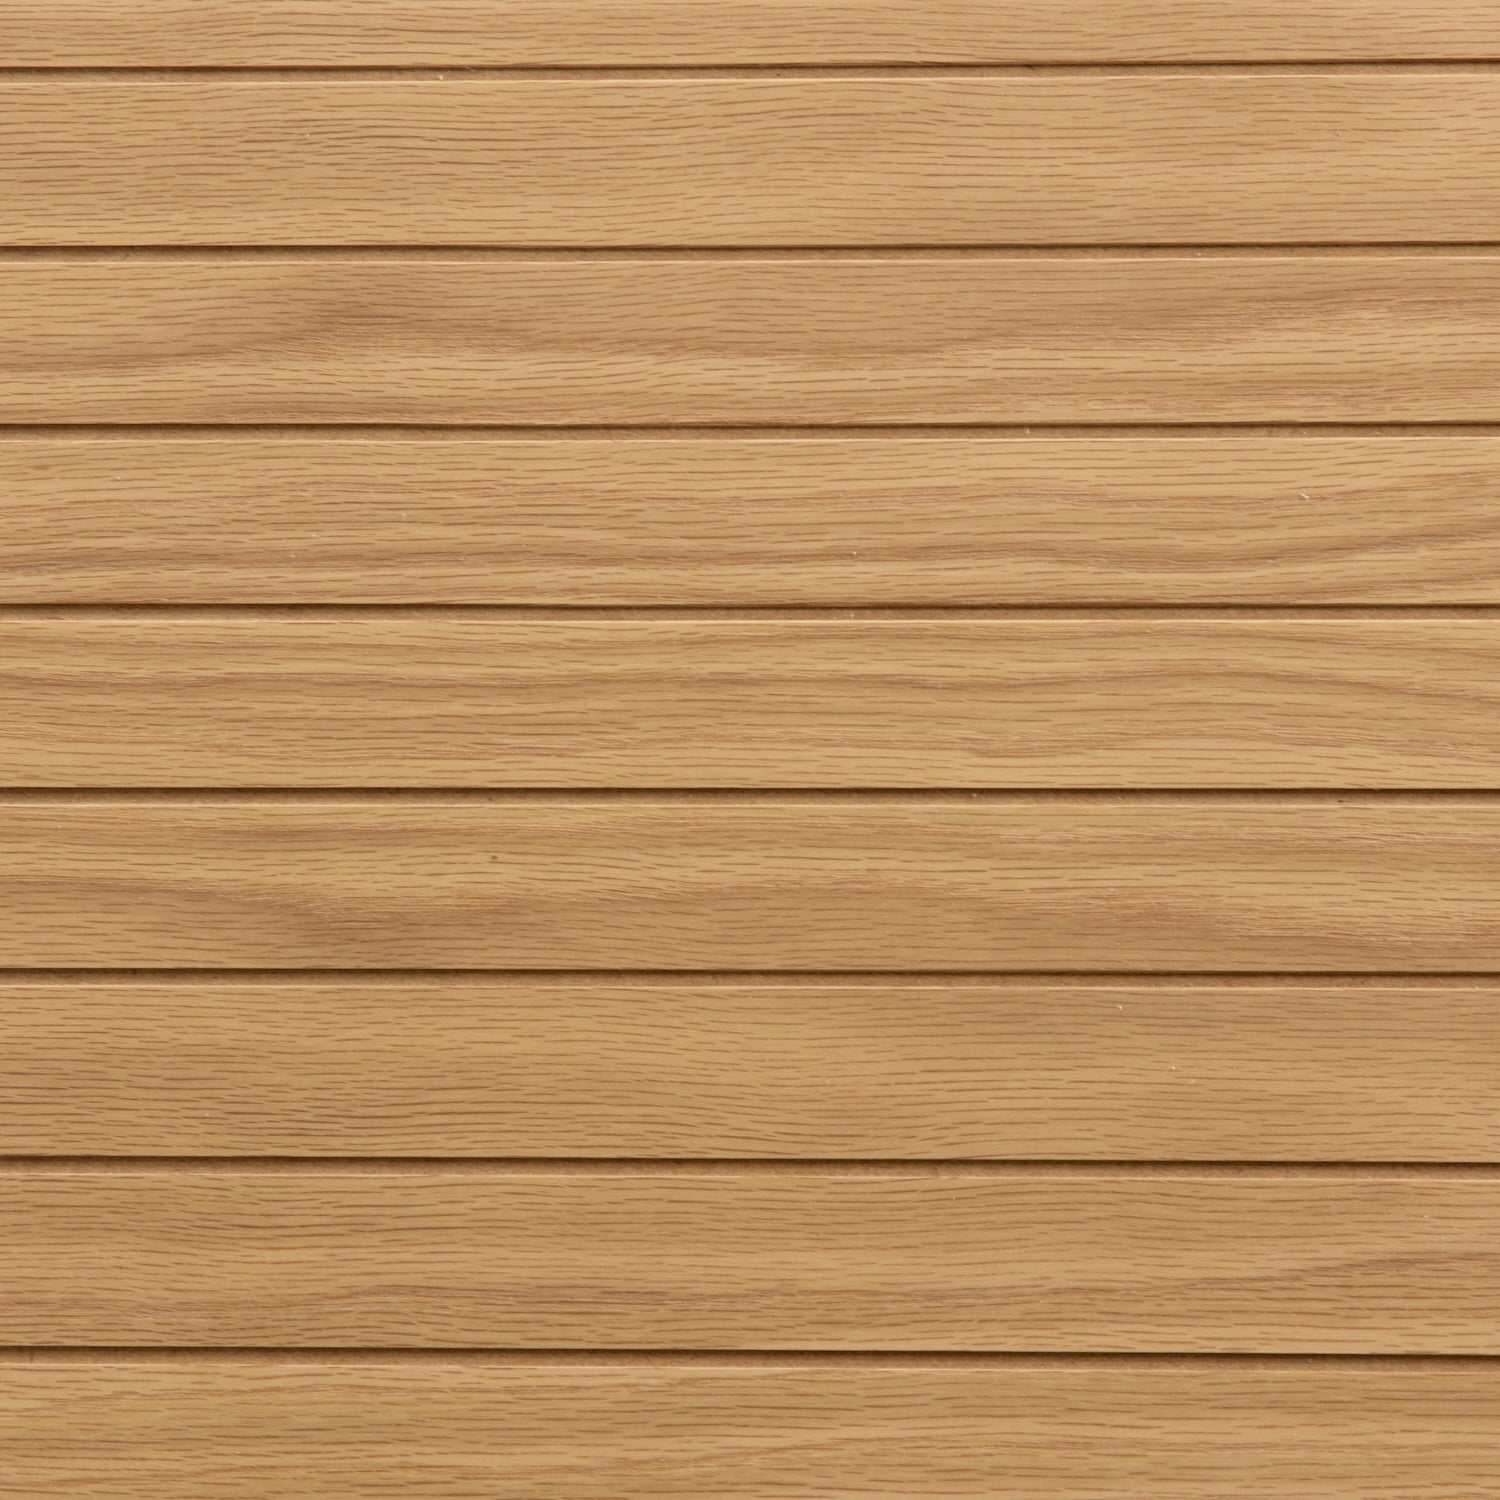 FOGO | שולחן עץ לסלון בגוון טבעי בשילוב אפור